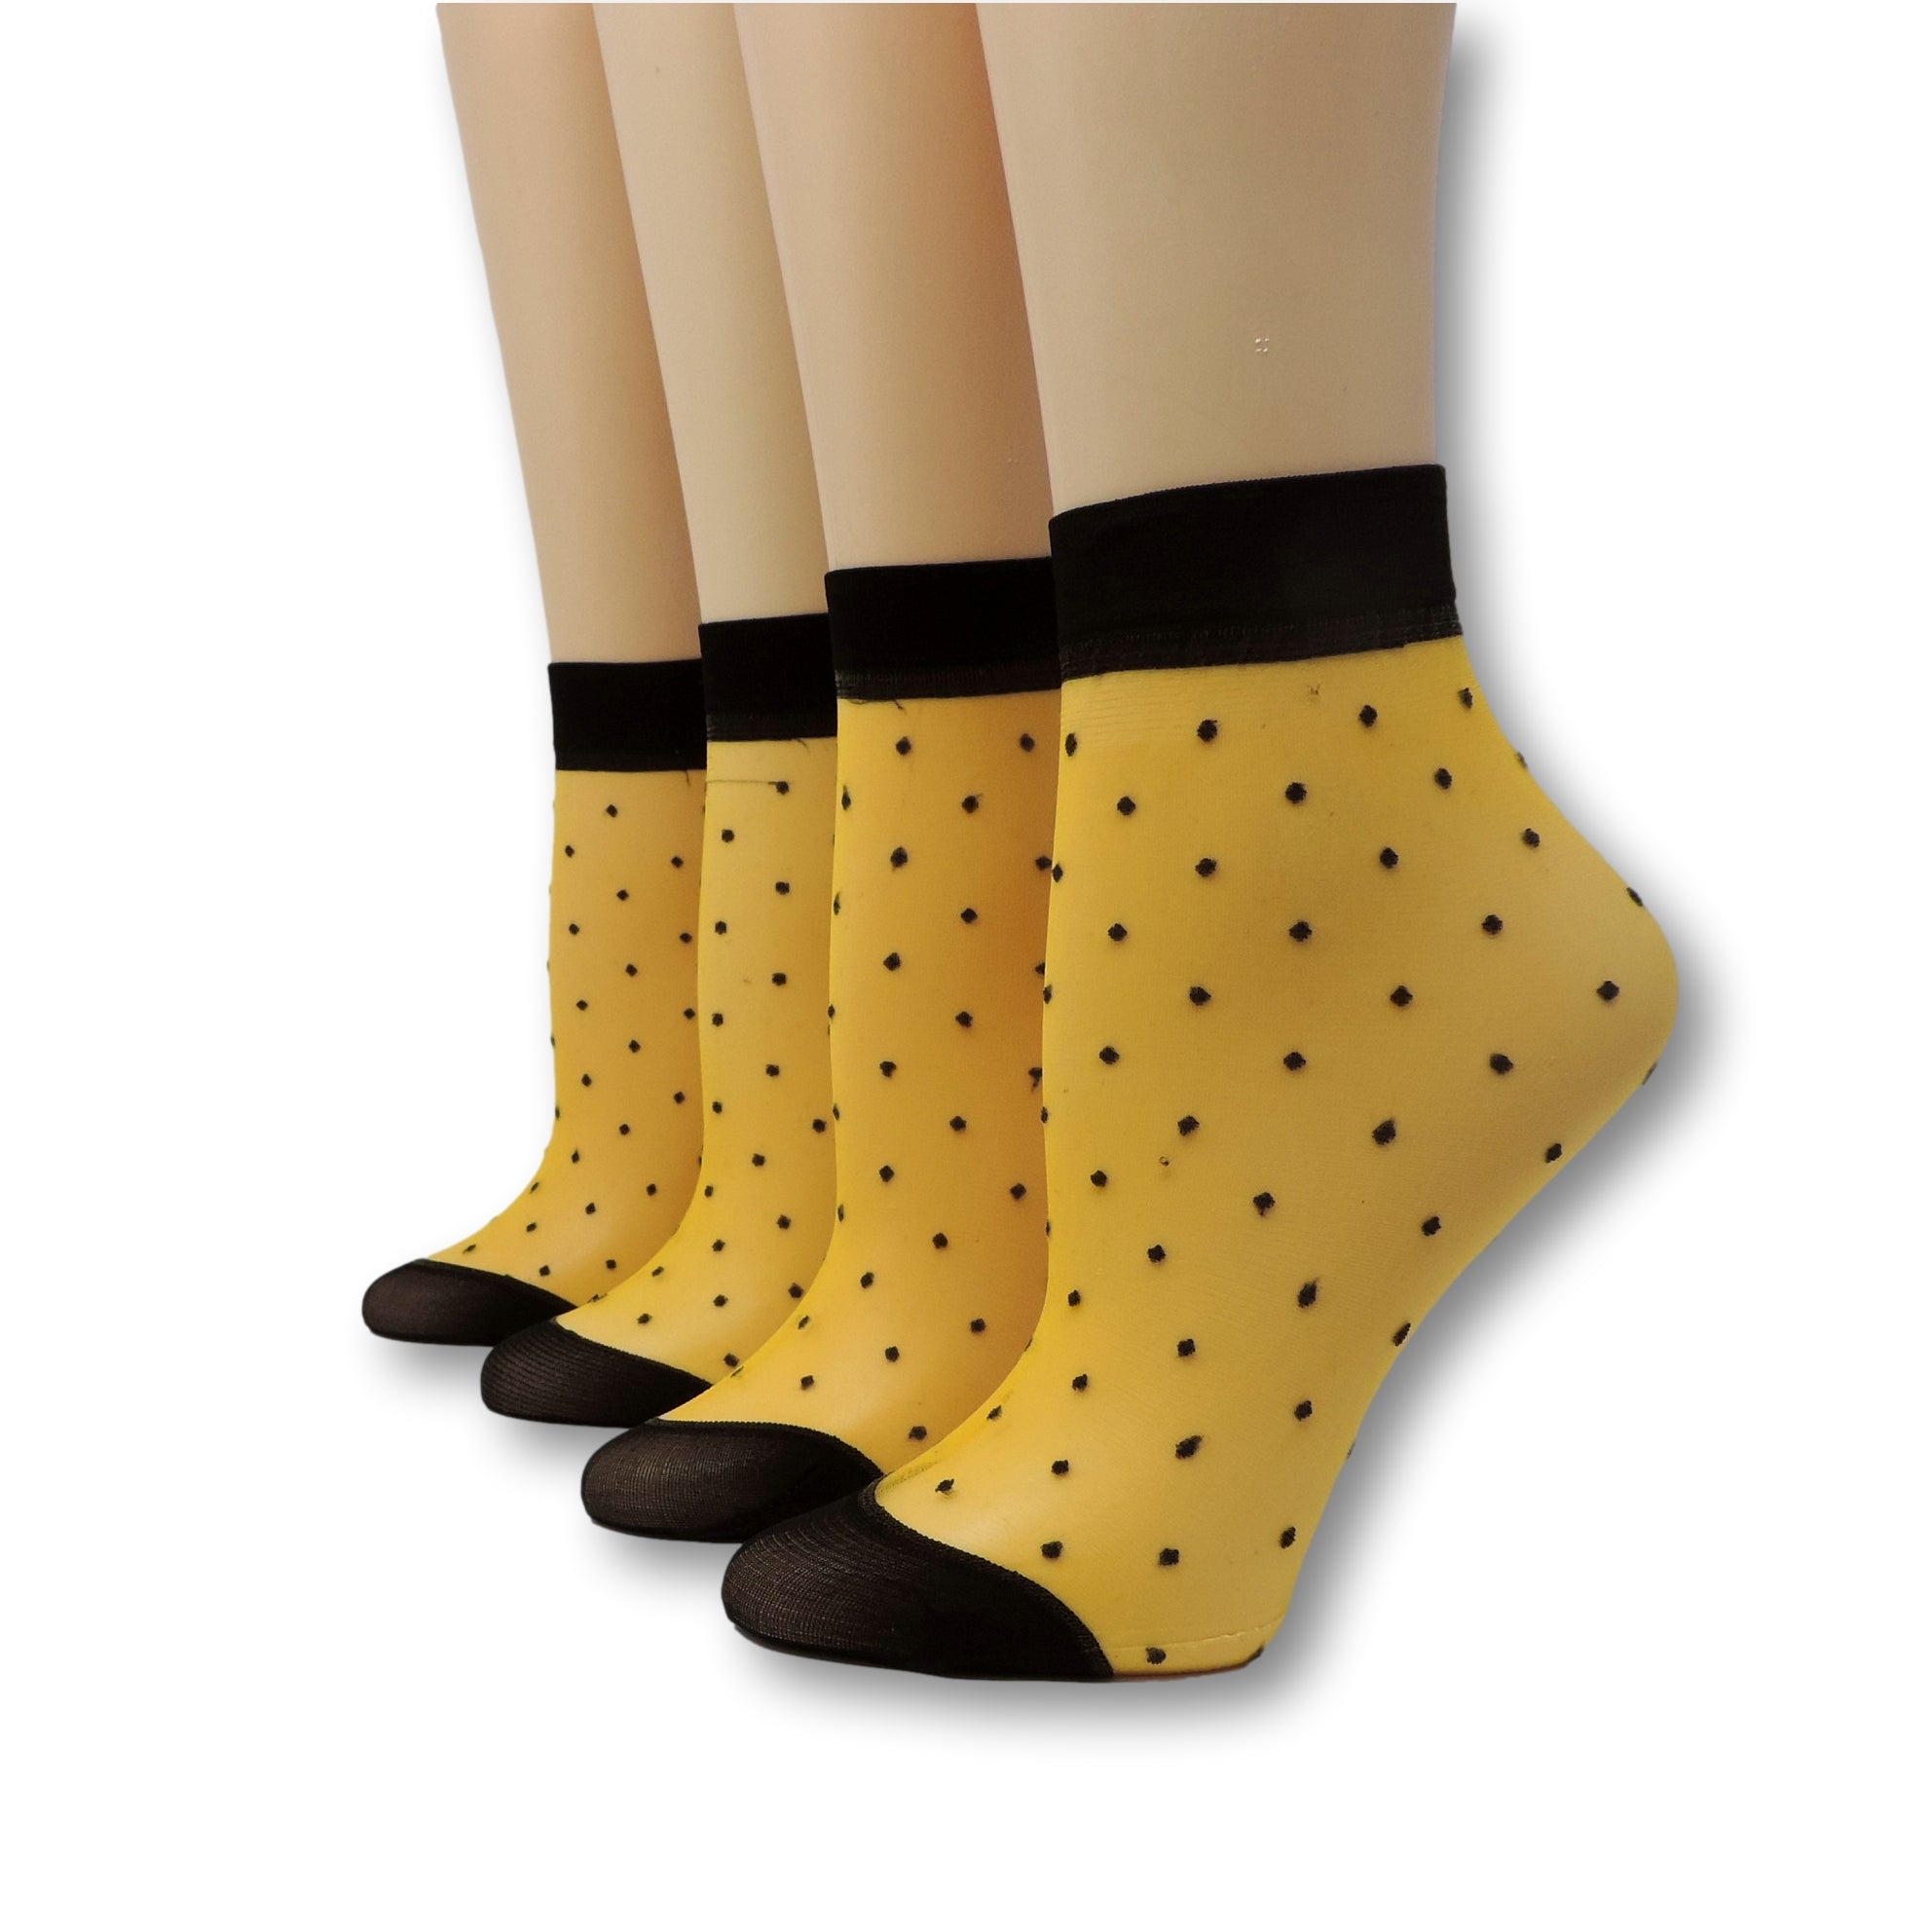 Mustard Yellow Polka Dot Nylon Socks (Pack of 10 Pairs)